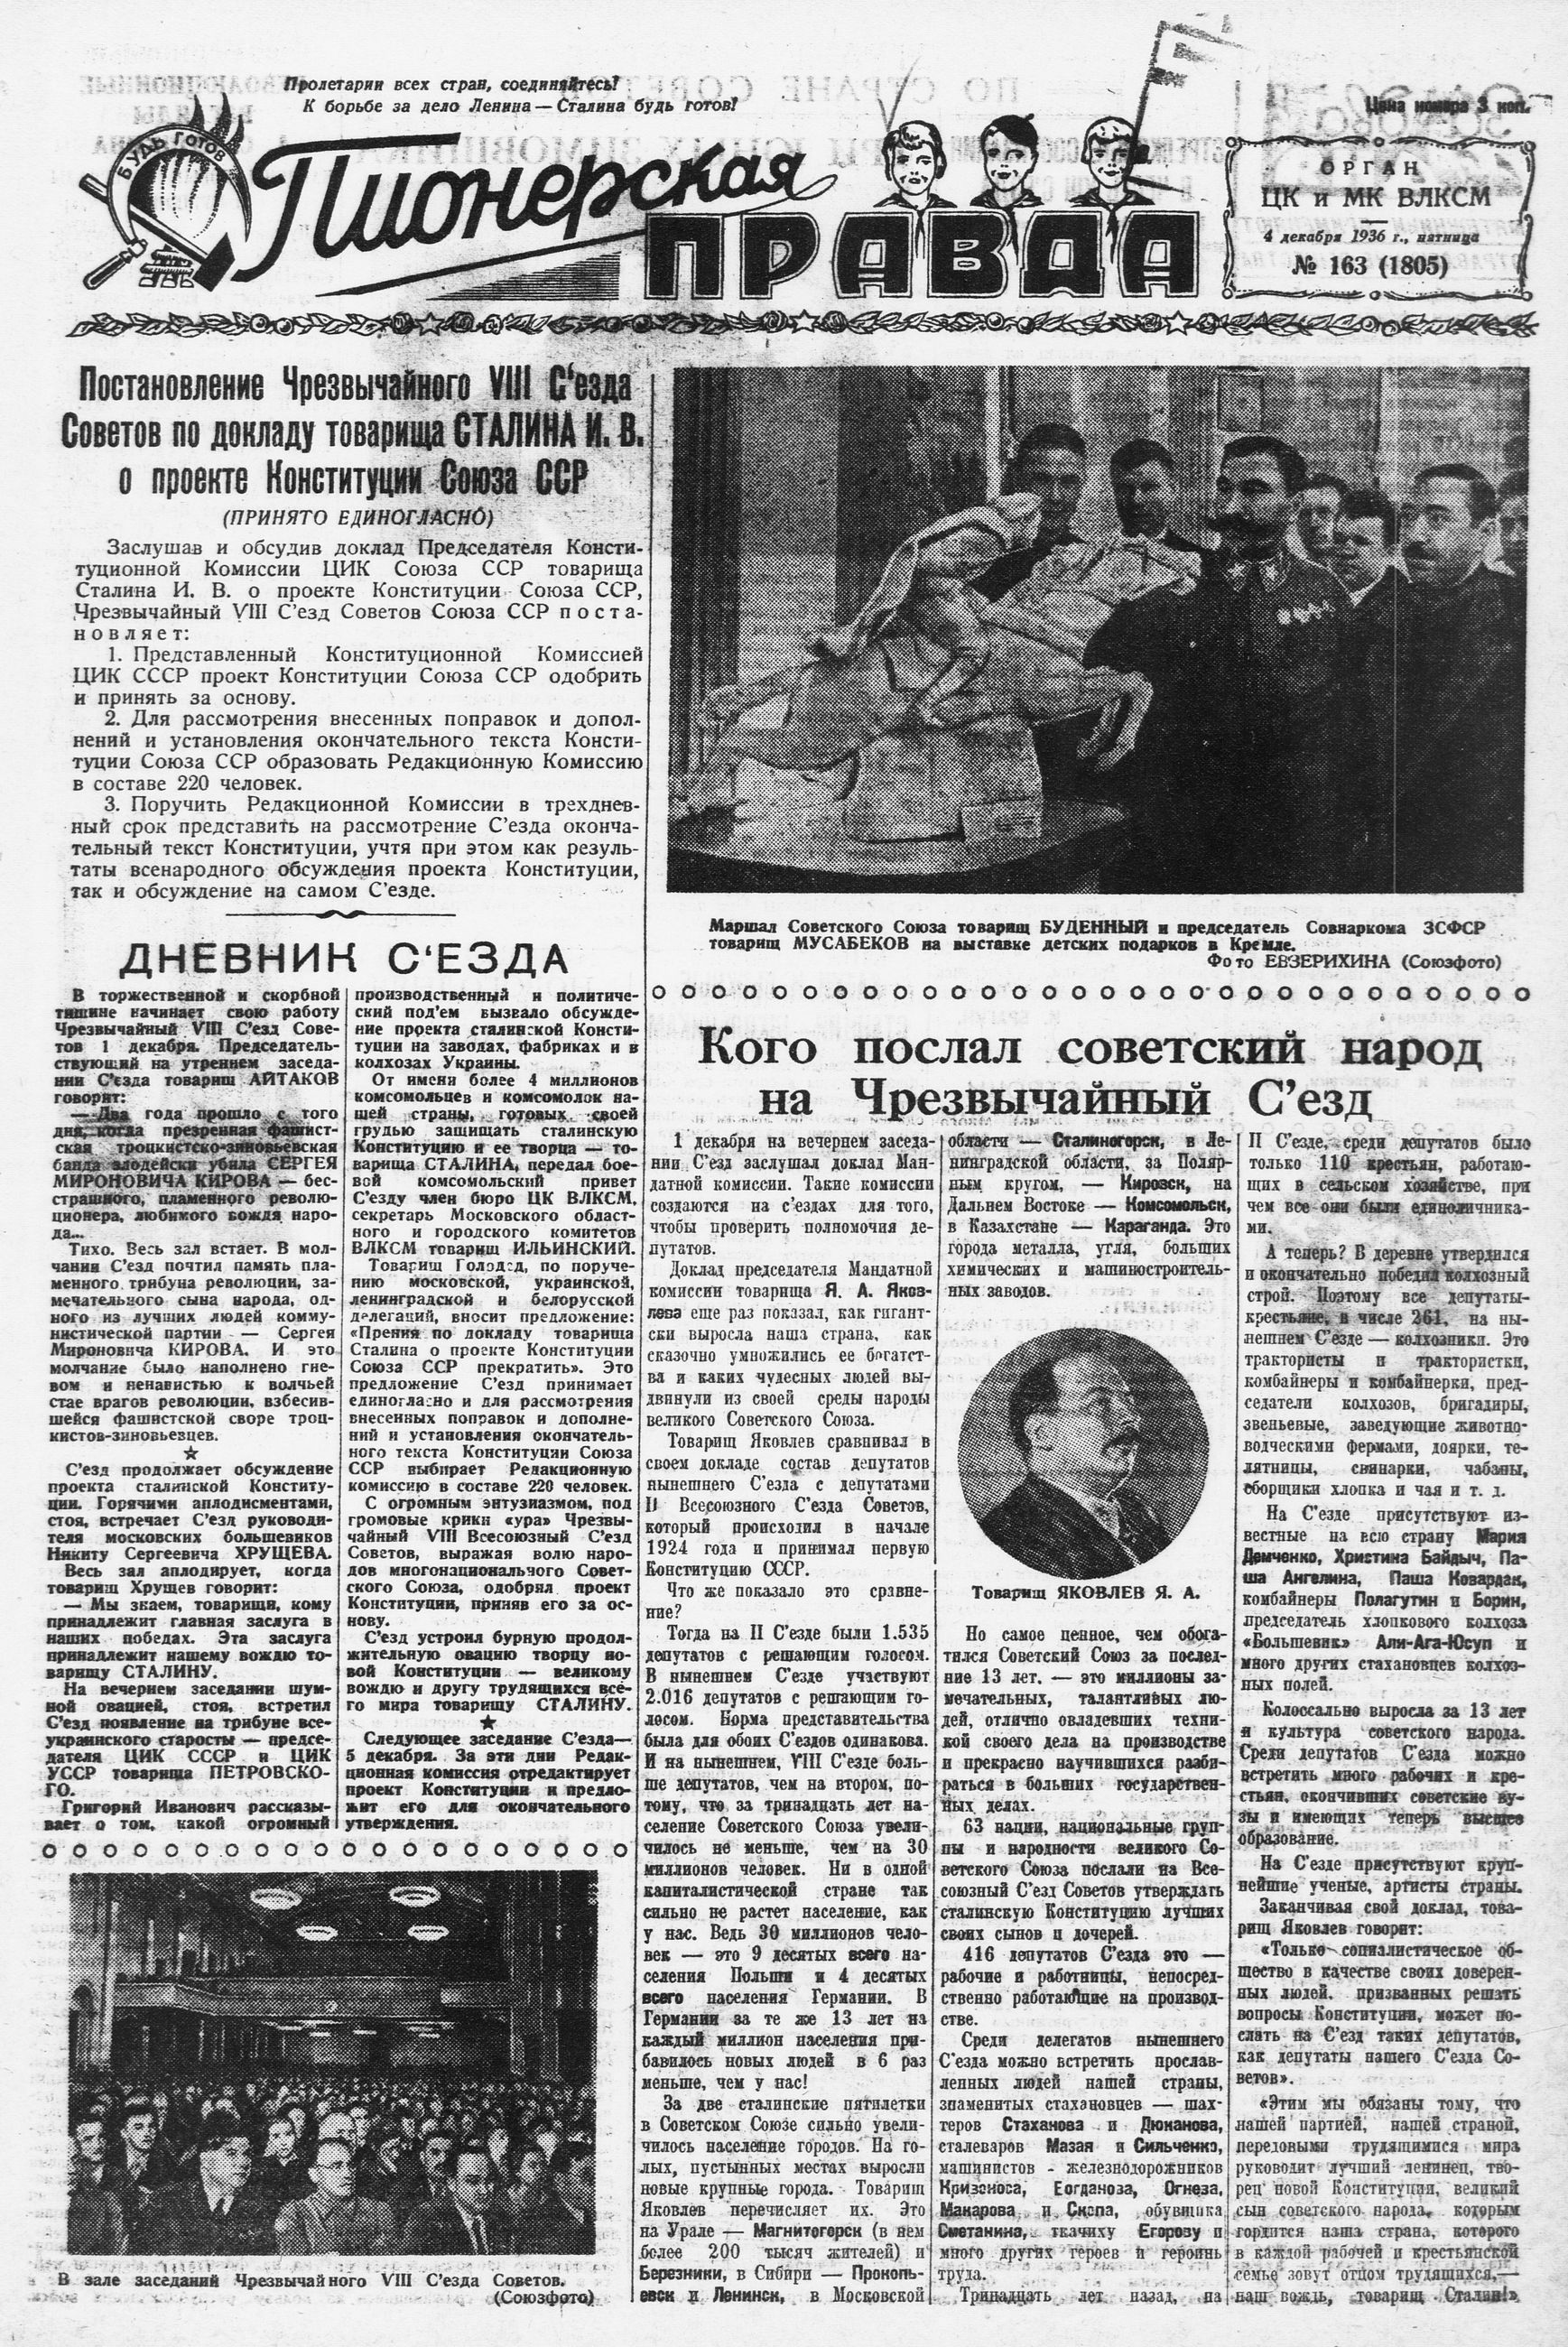 Пионерская правда. 1936. № 163 (1805): Орган ЦК и МК ВЛКСМ - 1936